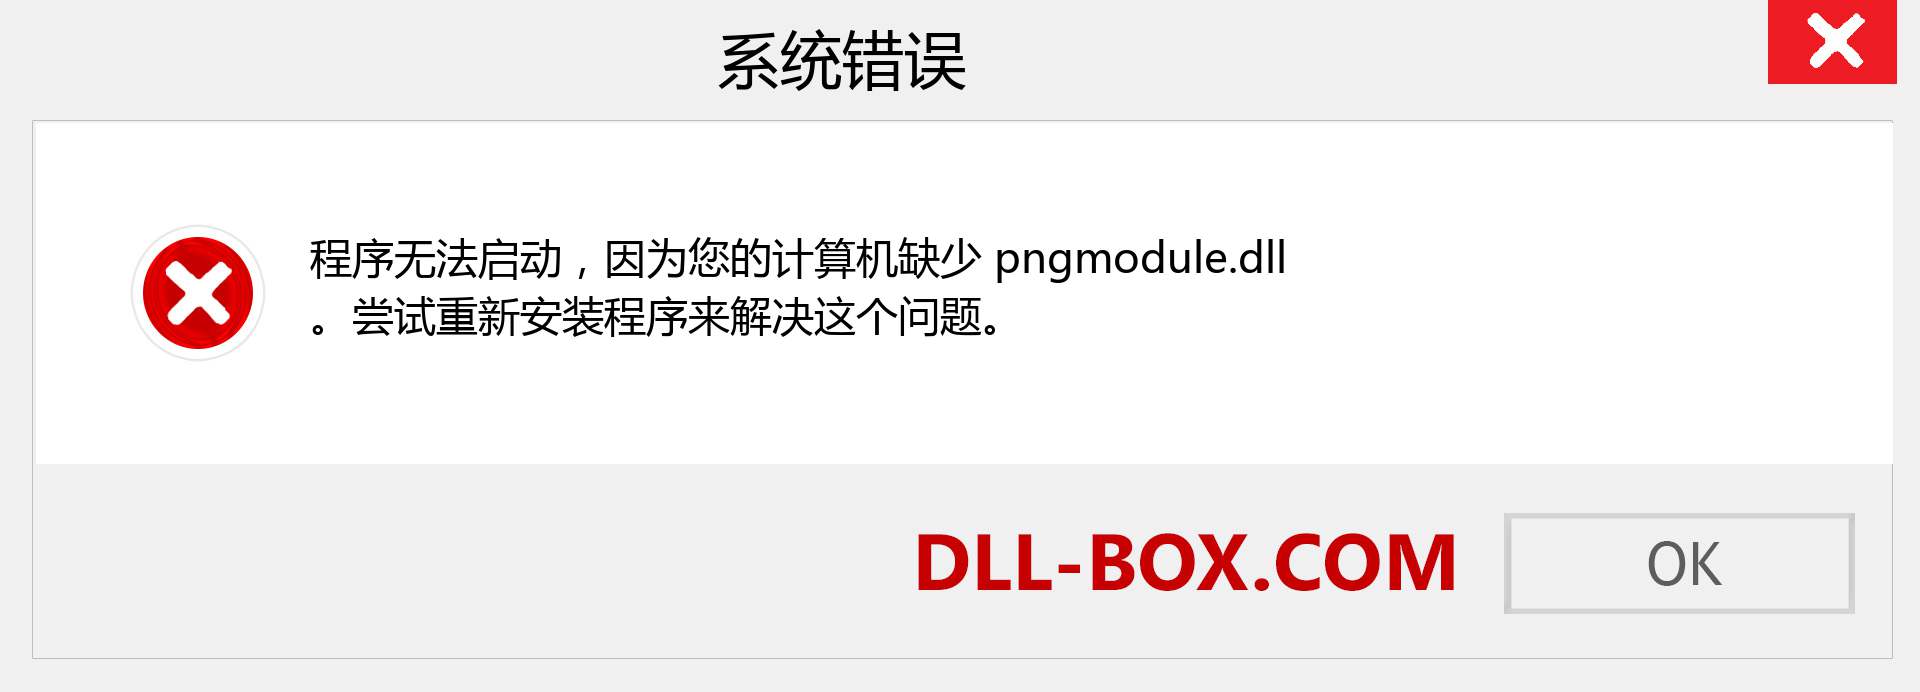 pngmodule.dll 文件丢失？。 适用于 Windows 7、8、10 的下载 - 修复 Windows、照片、图像上的 pngmodule dll 丢失错误